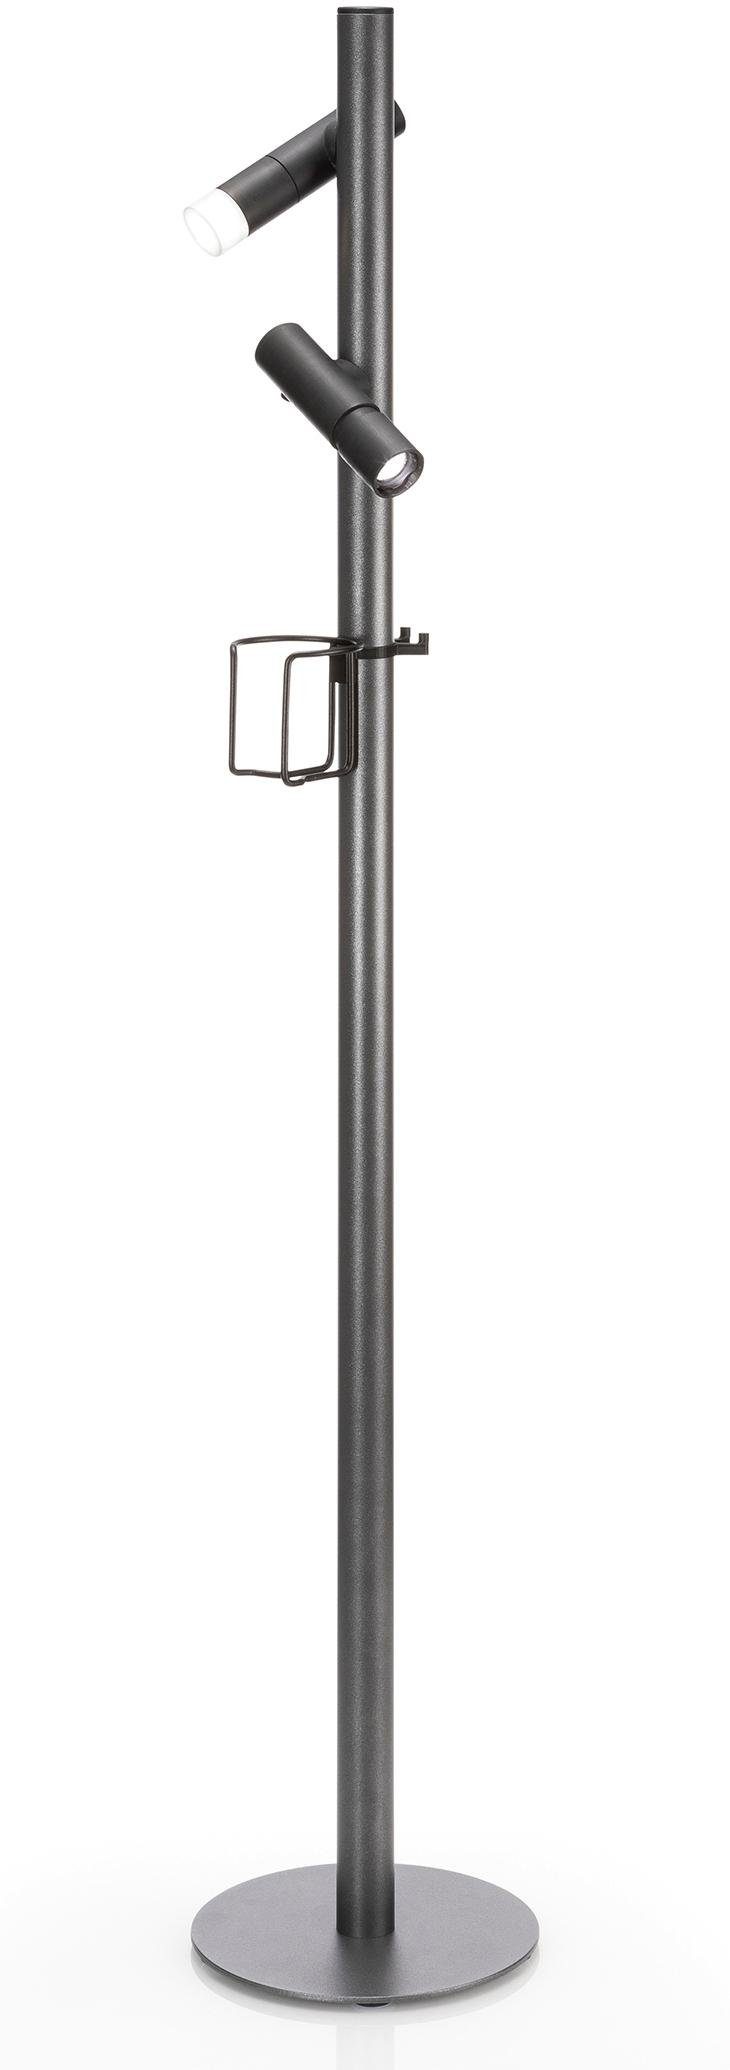 EVOTEC Gartenleuchte »PAUL«, Outdoorleuchte ideal zum Grillen, 2 LED Taschenlampen, 2 USB-Ladekabel, Multiring mit Flaschenhalter und 3 Haken-Otto